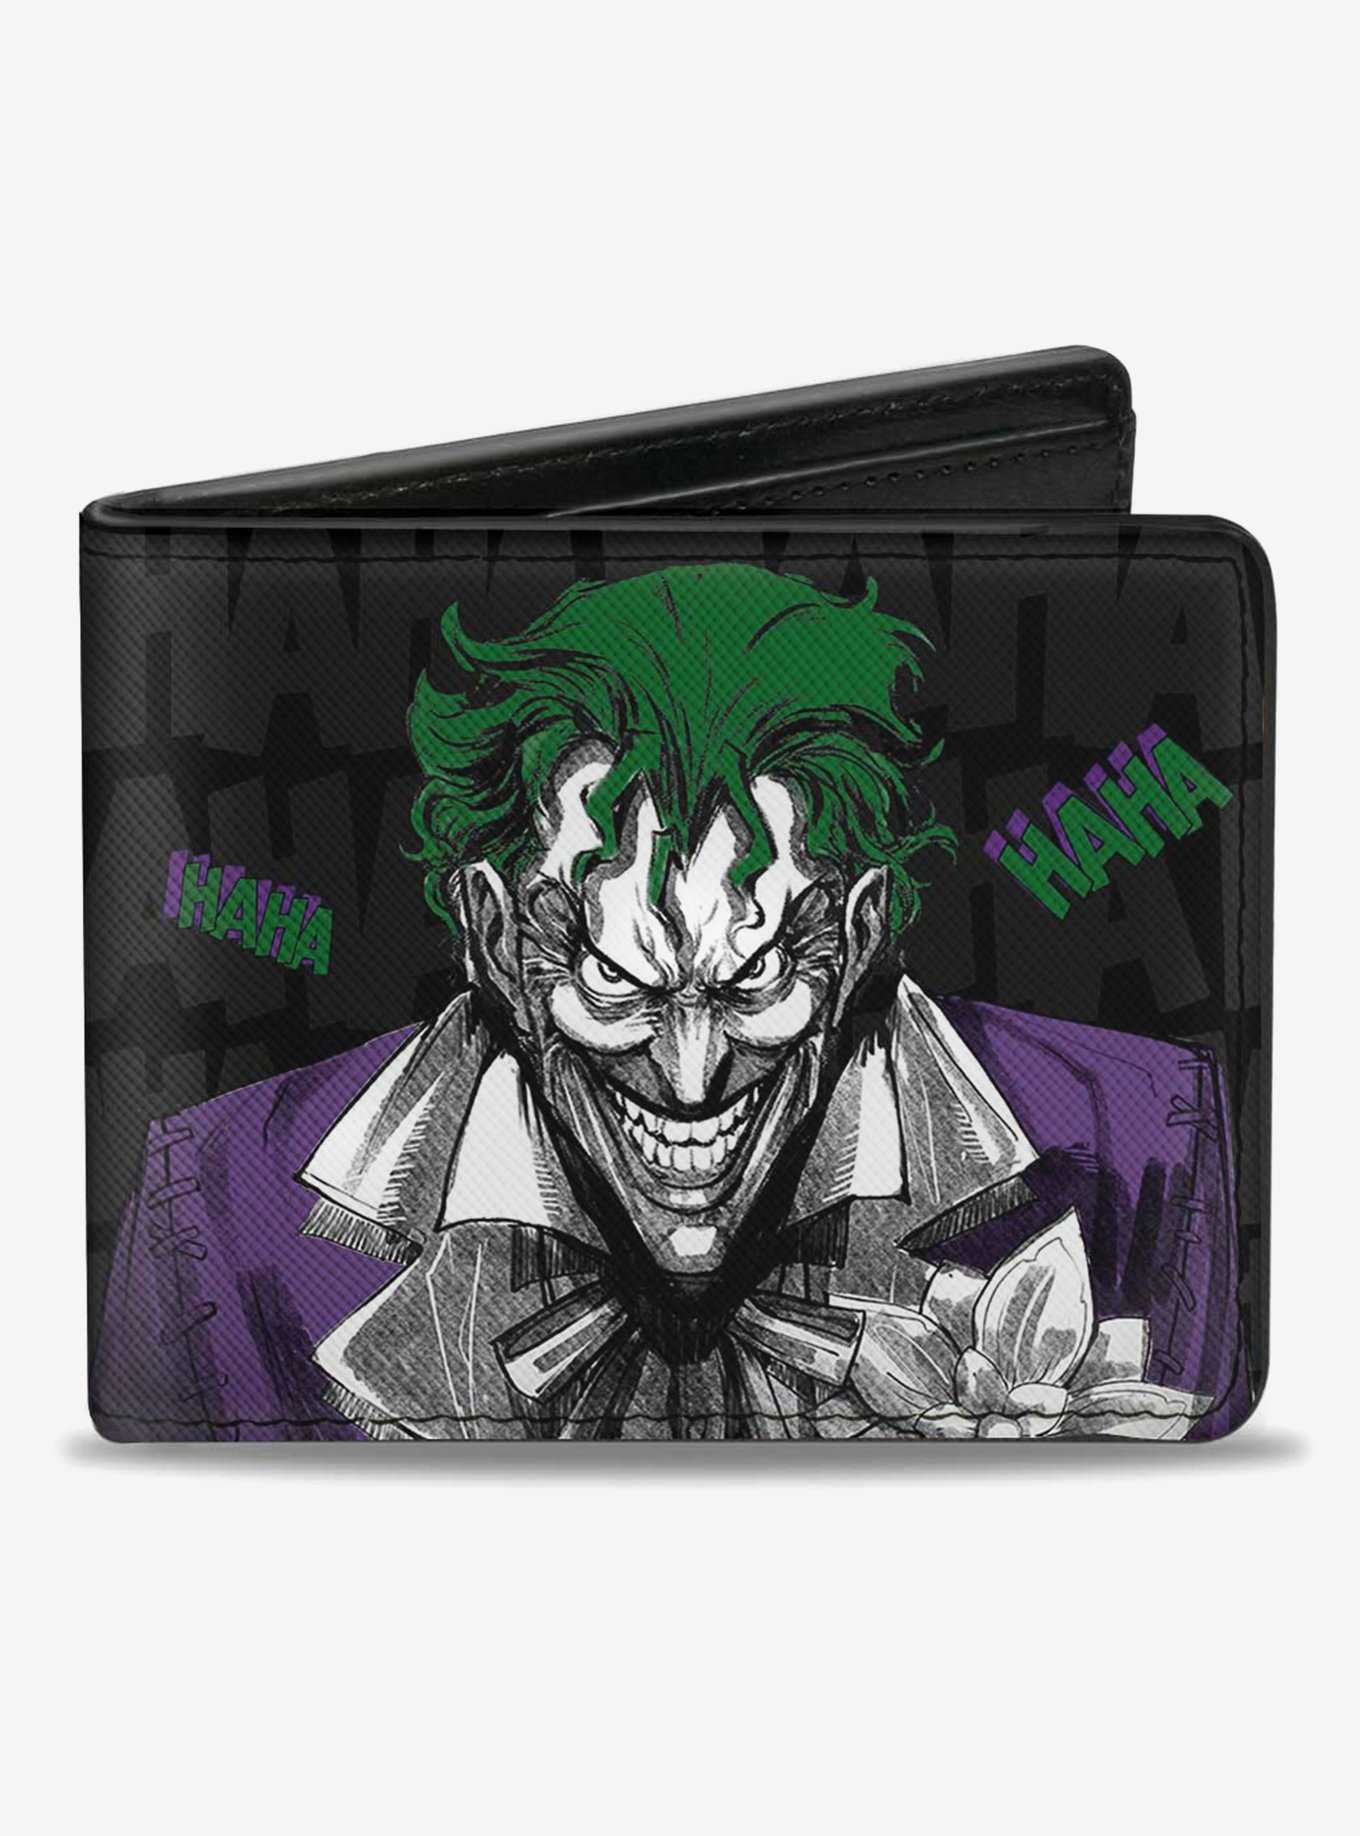 DC Comics Batman Joker Smiling Haha Bifold Wallet, , hi-res